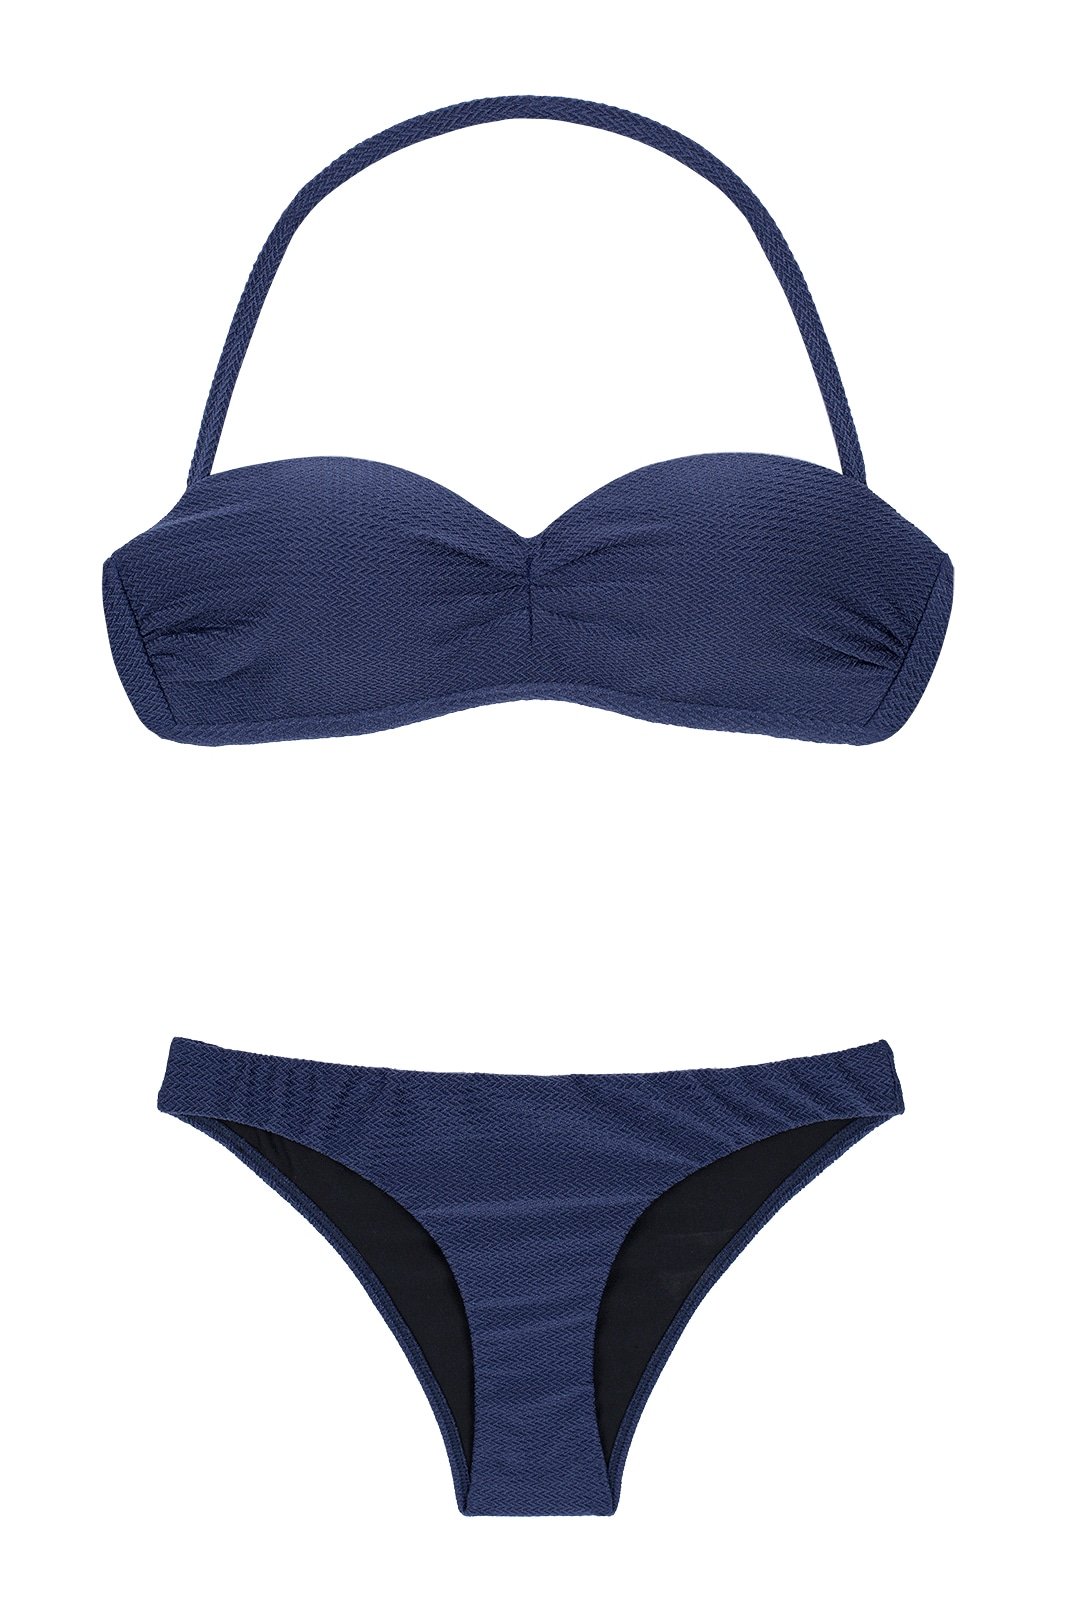 Navy Blue Bandeau Bikini With Moulded Cups - Duna Marinho Tomara Que ...